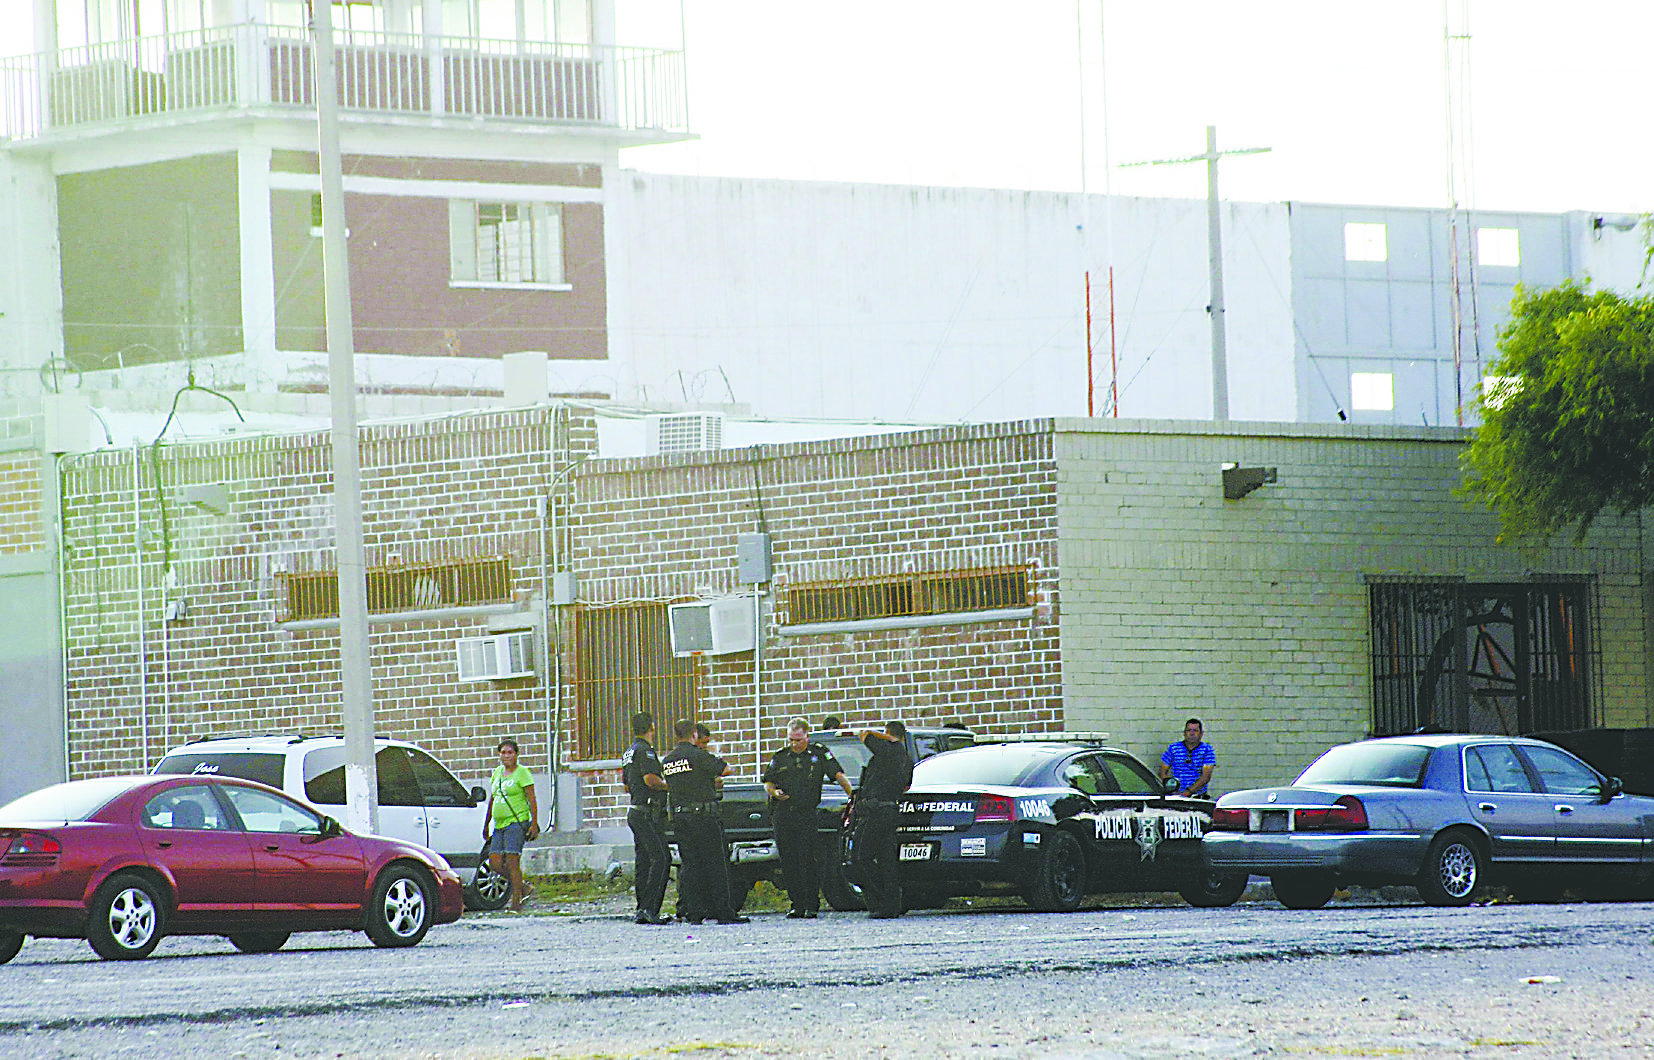 墨西哥彼德拉斯内格拉斯监狱，130多名囚犯通过挖地道成功越狱。